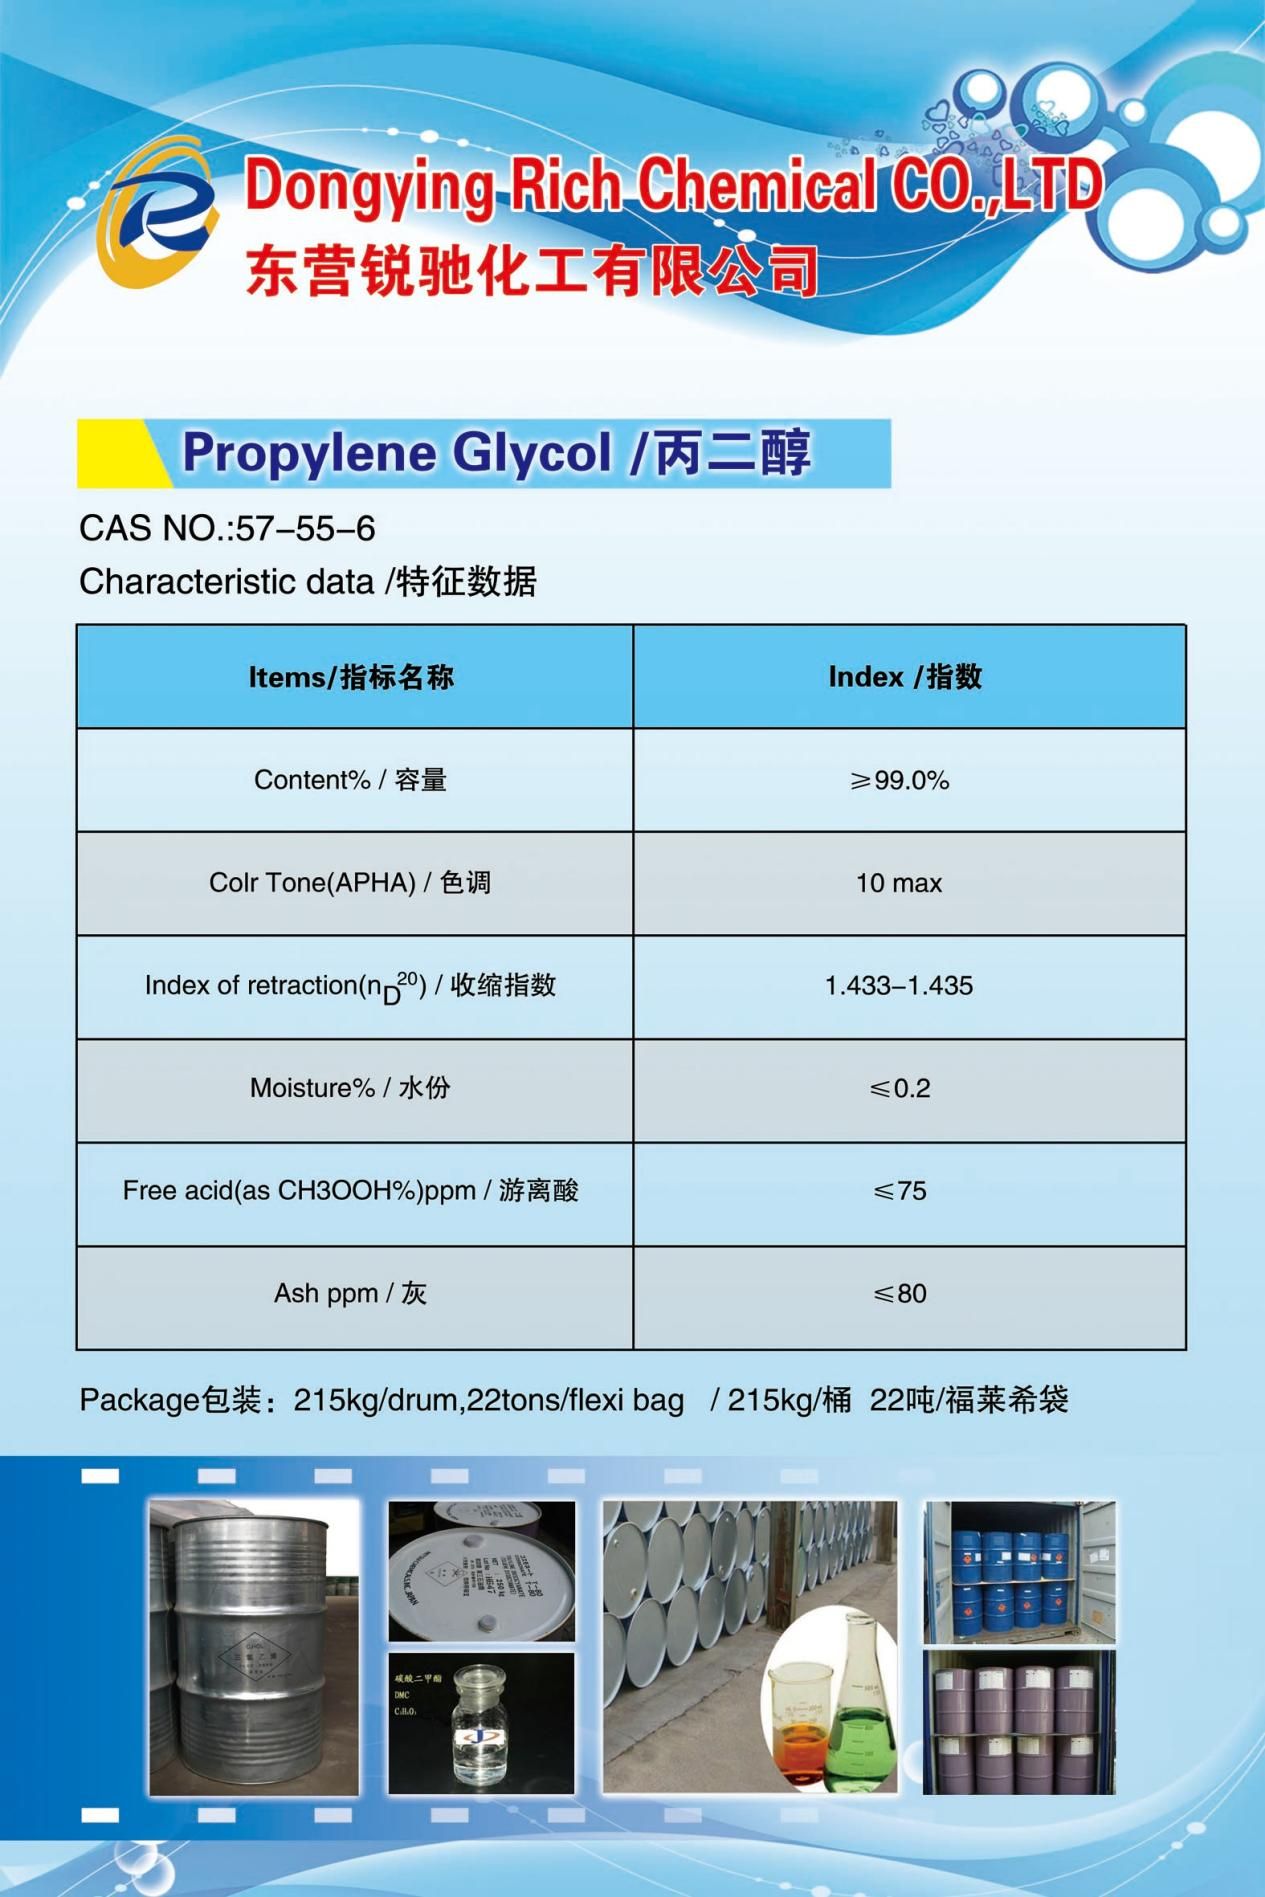 Propylene glycol (1)